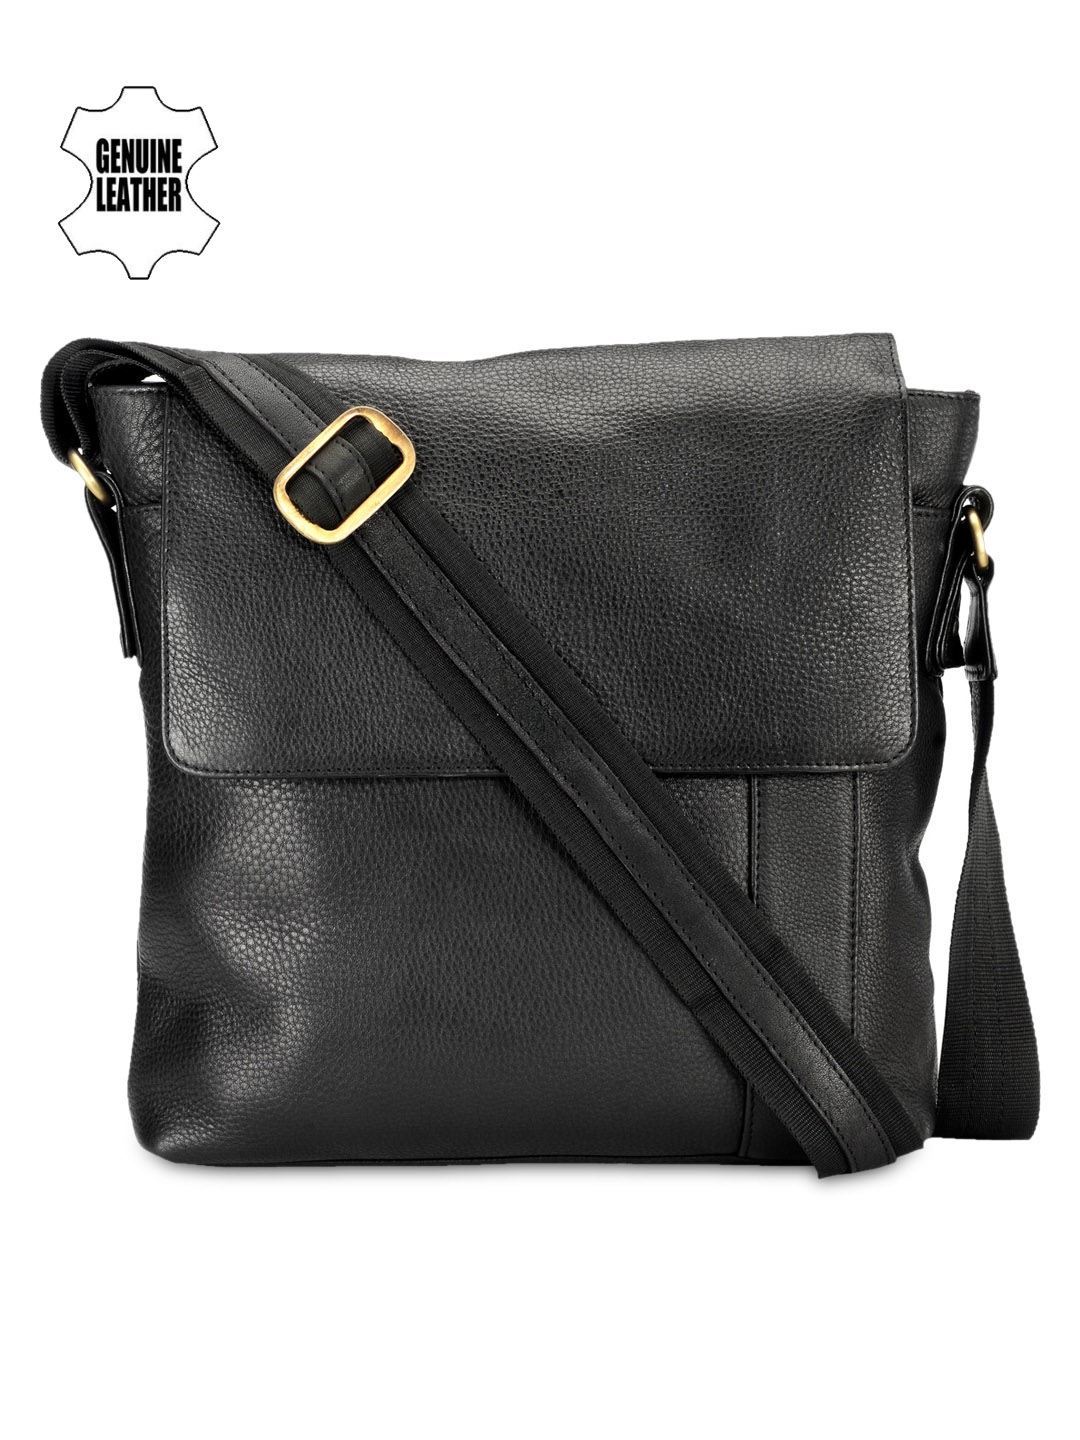 Buy Teakwood Leathers Unisex Black Genuine Leather Messenger Bag ...